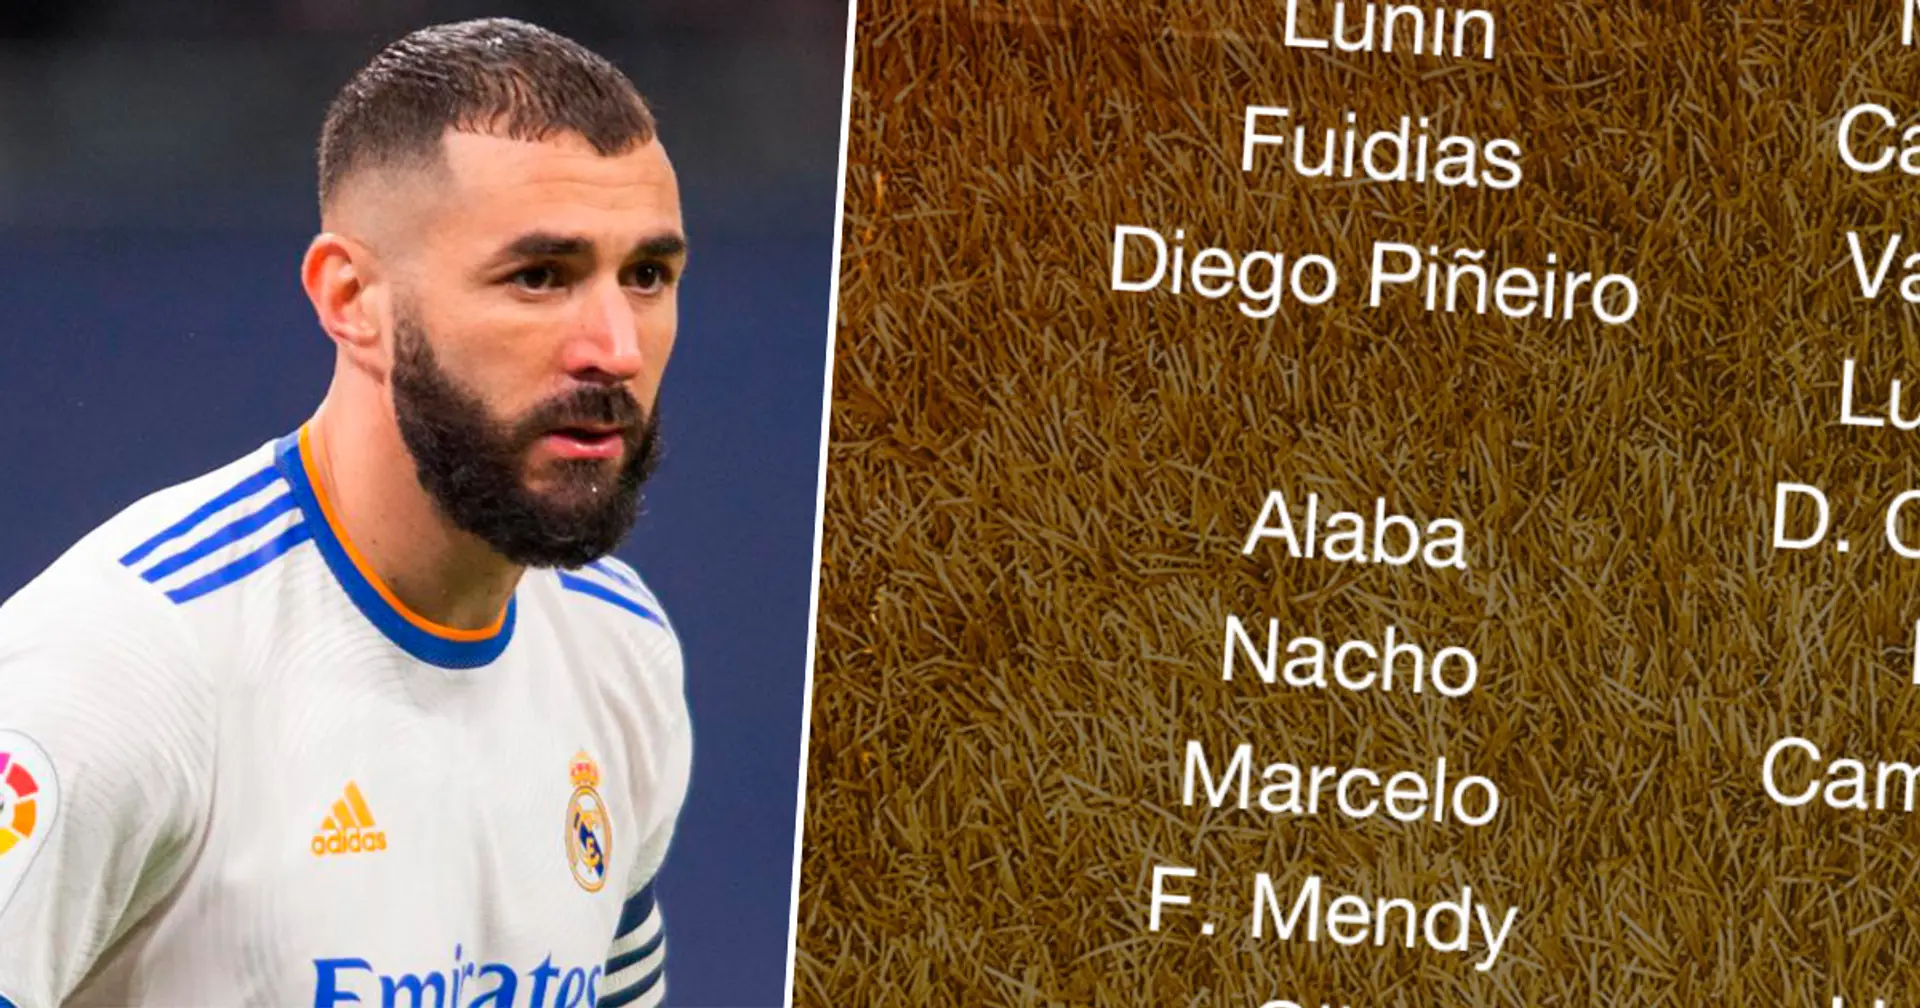 No Benzema: Ancelotti names 21-man squad for Elche clash